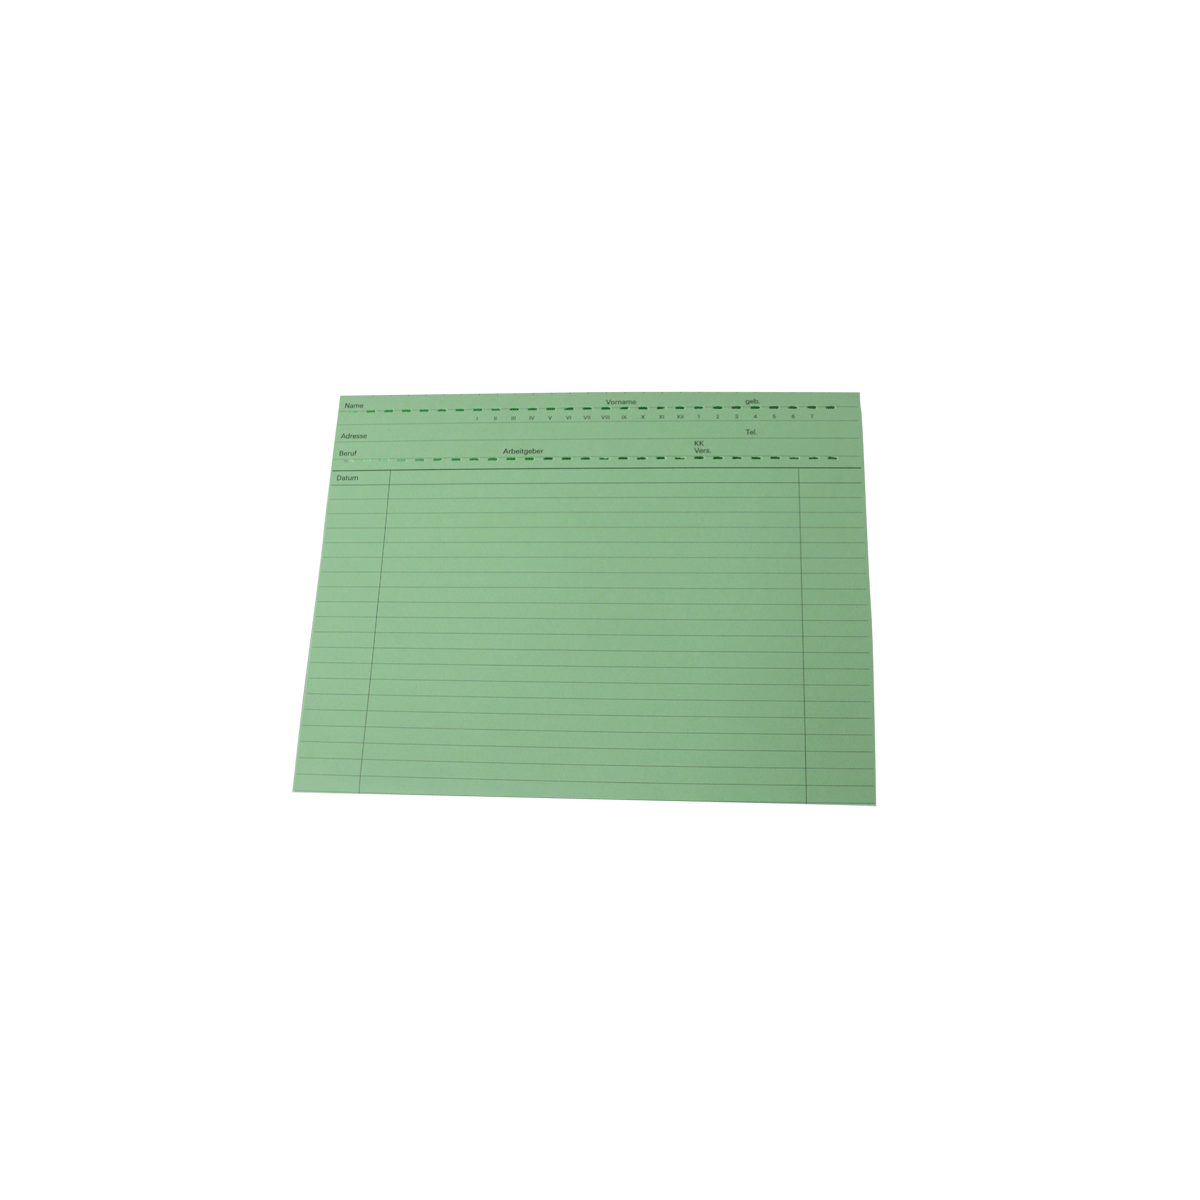 Patientenkarten grün A5 20 Stk